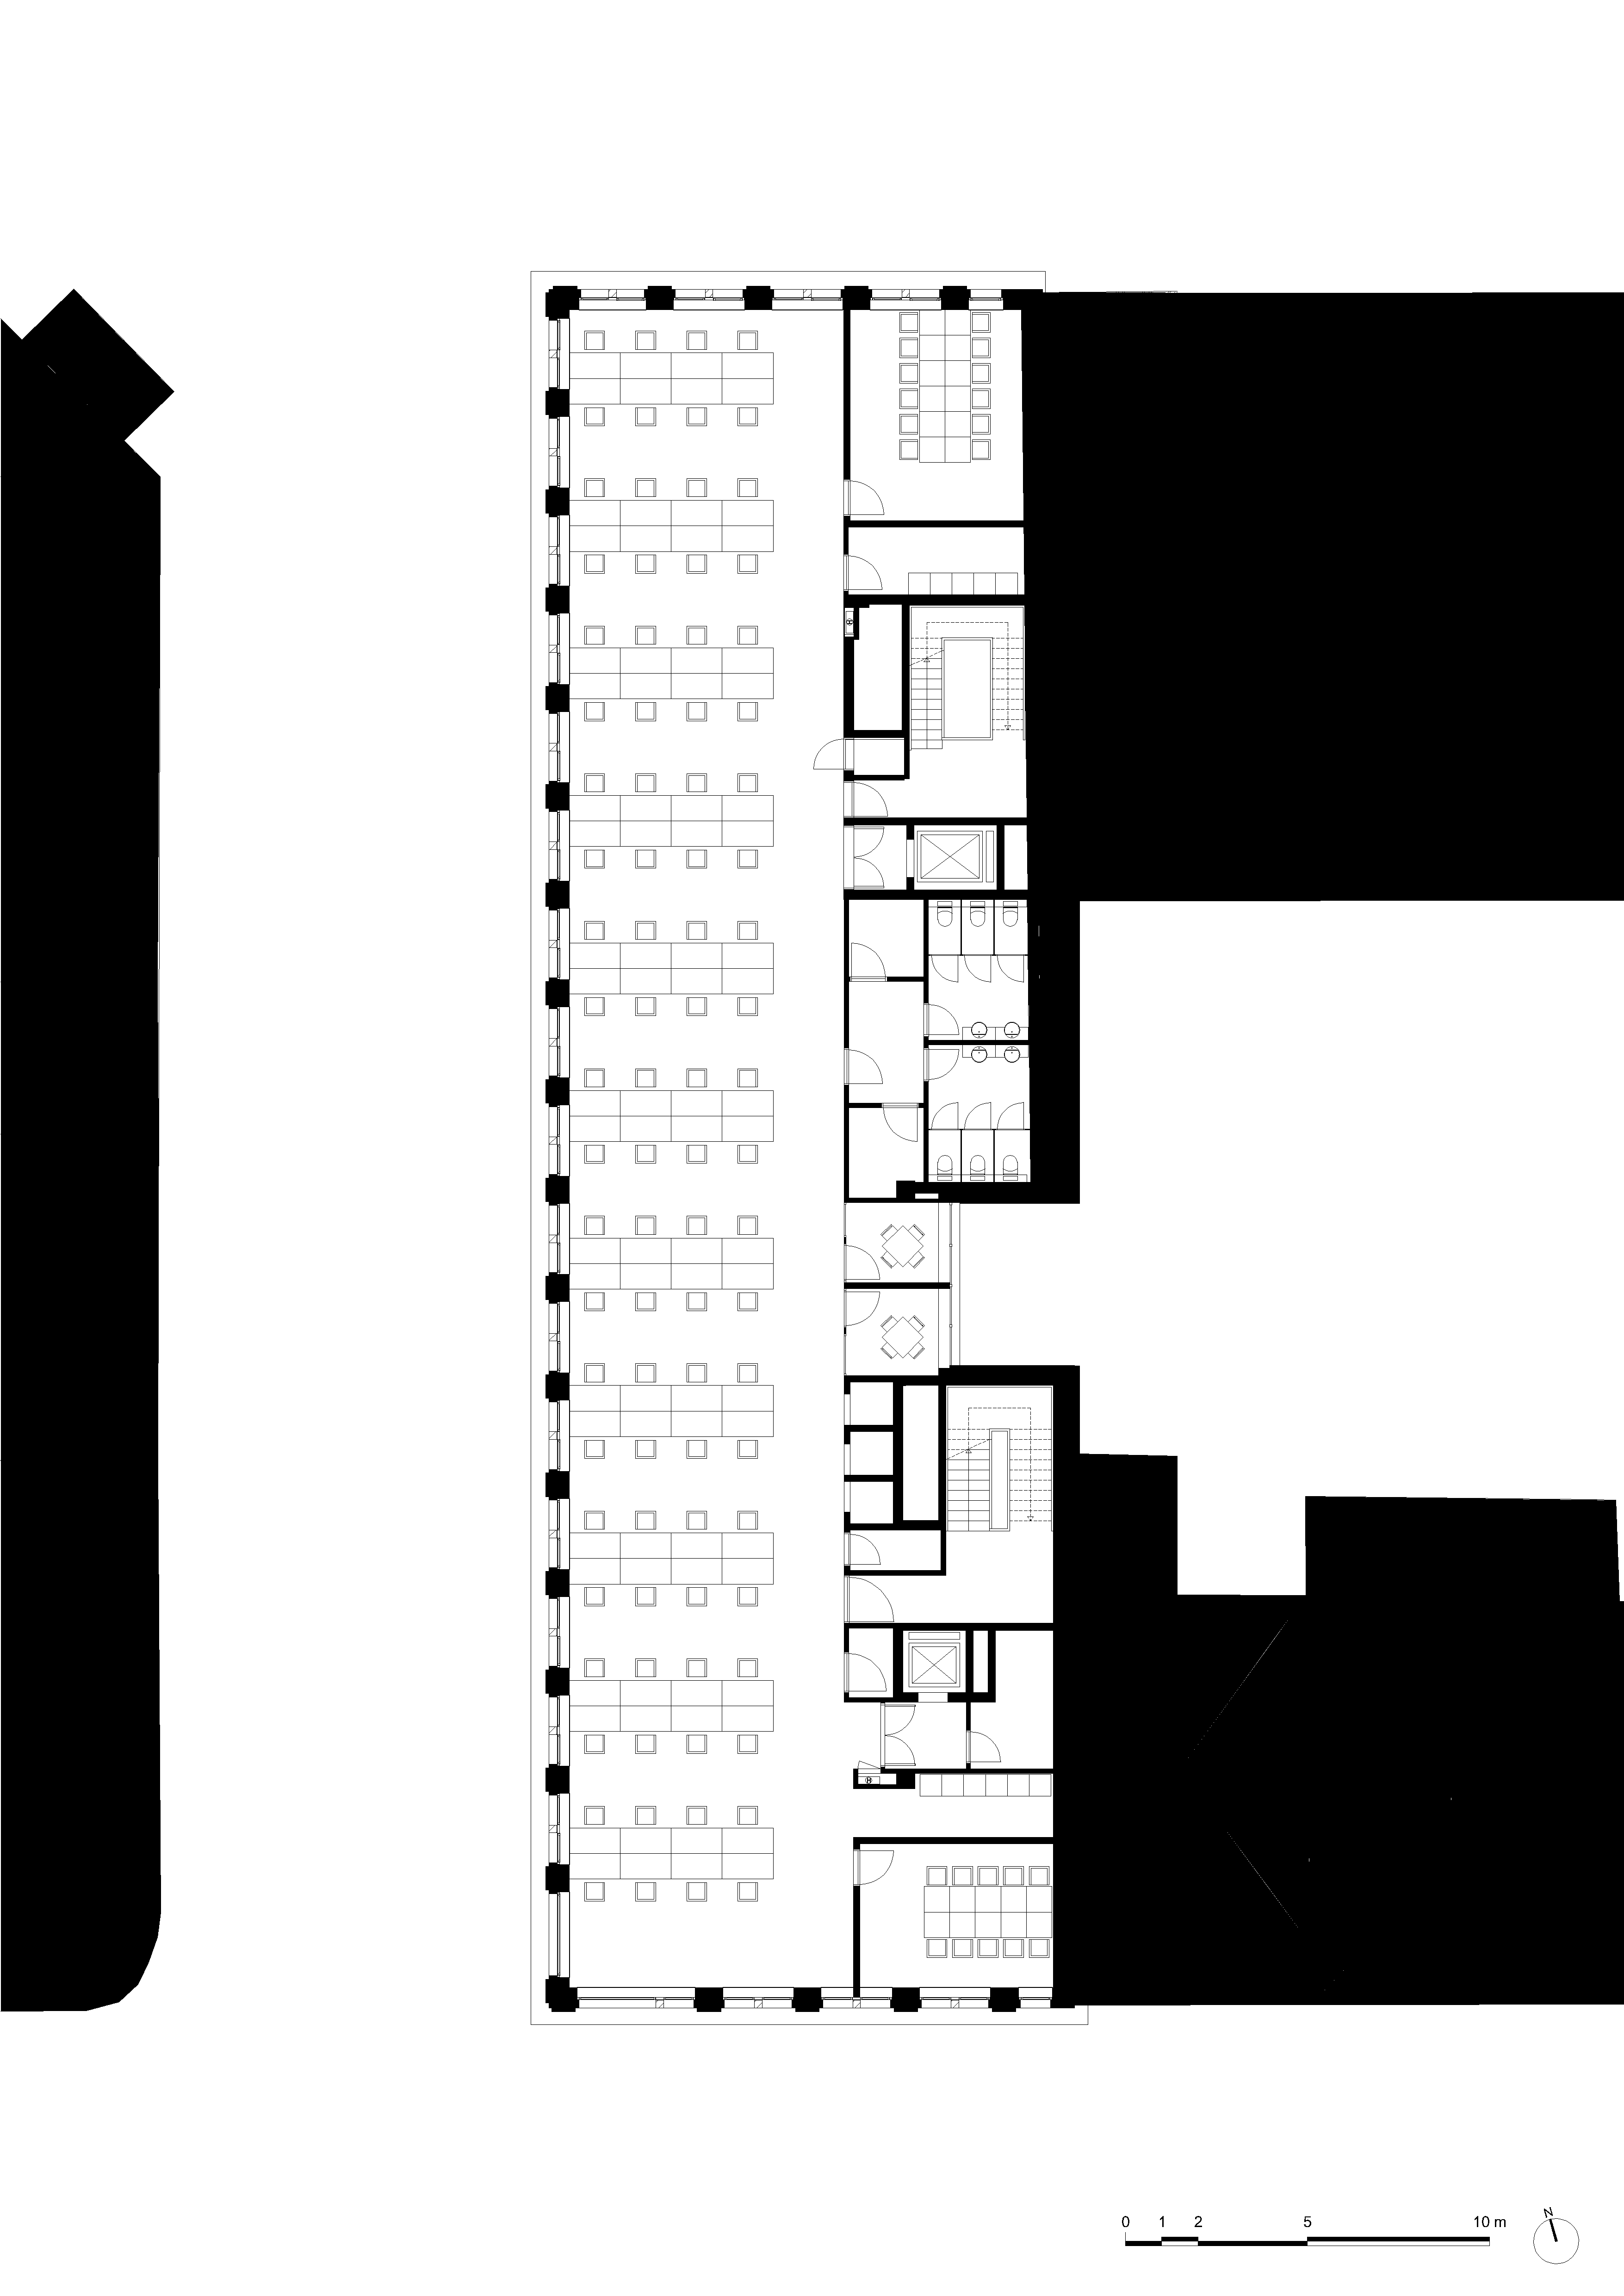 architecture-contemporaine-dockin-sambrinvest-bureau-innovation-charleroi-brique-émaillée-plan-quatrième-étage